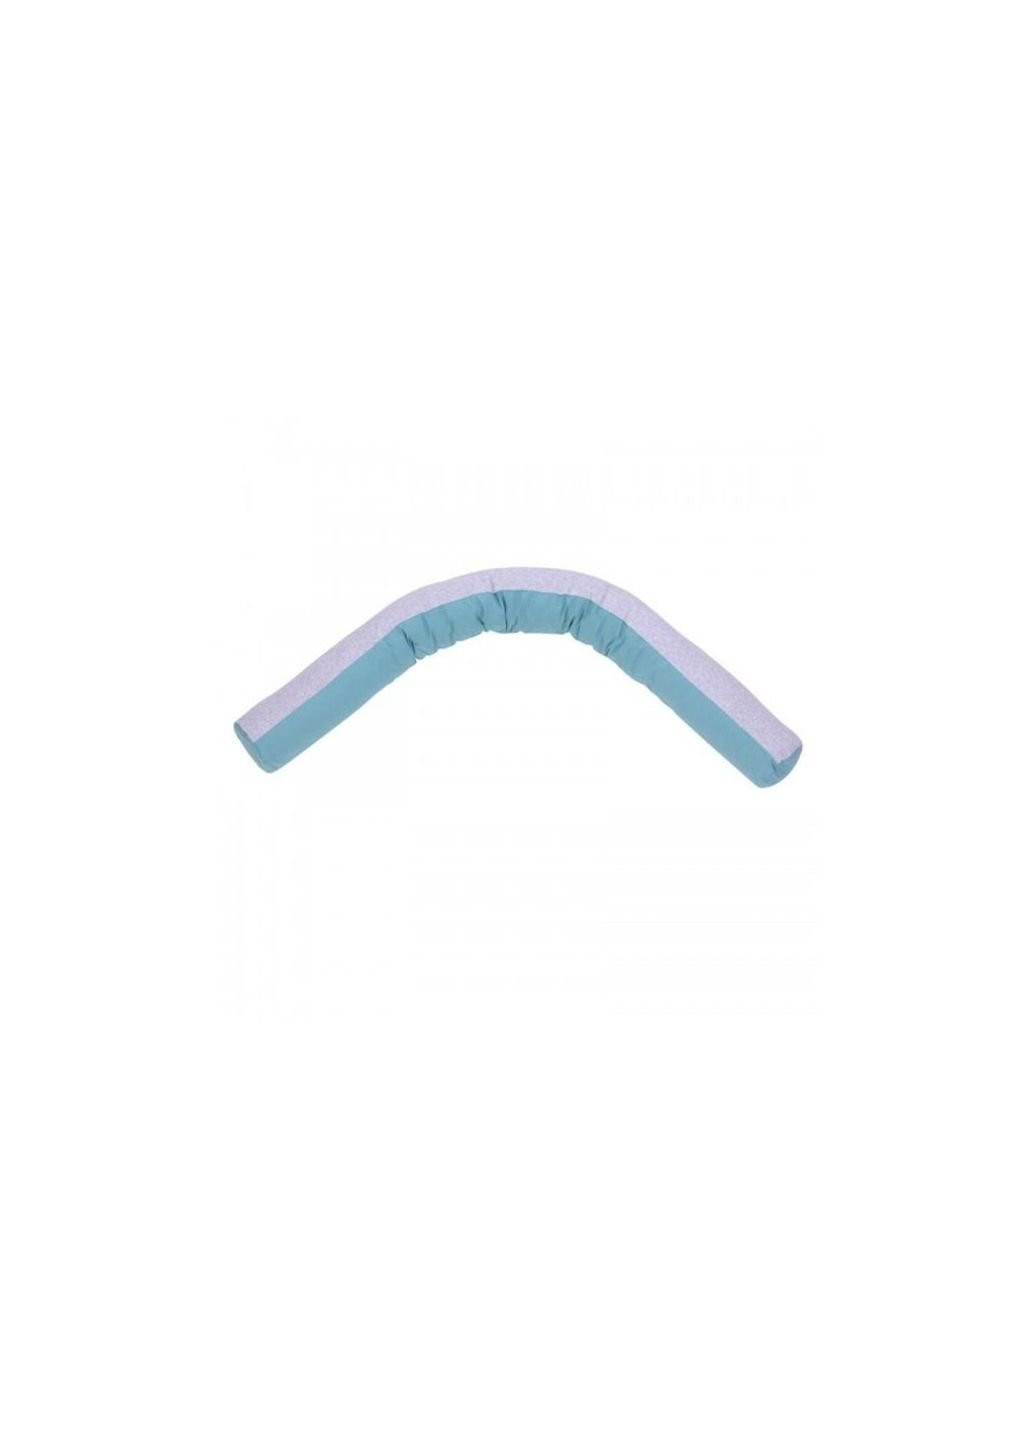 Подушка для годування "Comfort Long Velour grey-tiffany" 170*52 (302.01.3) Верес (254079996)